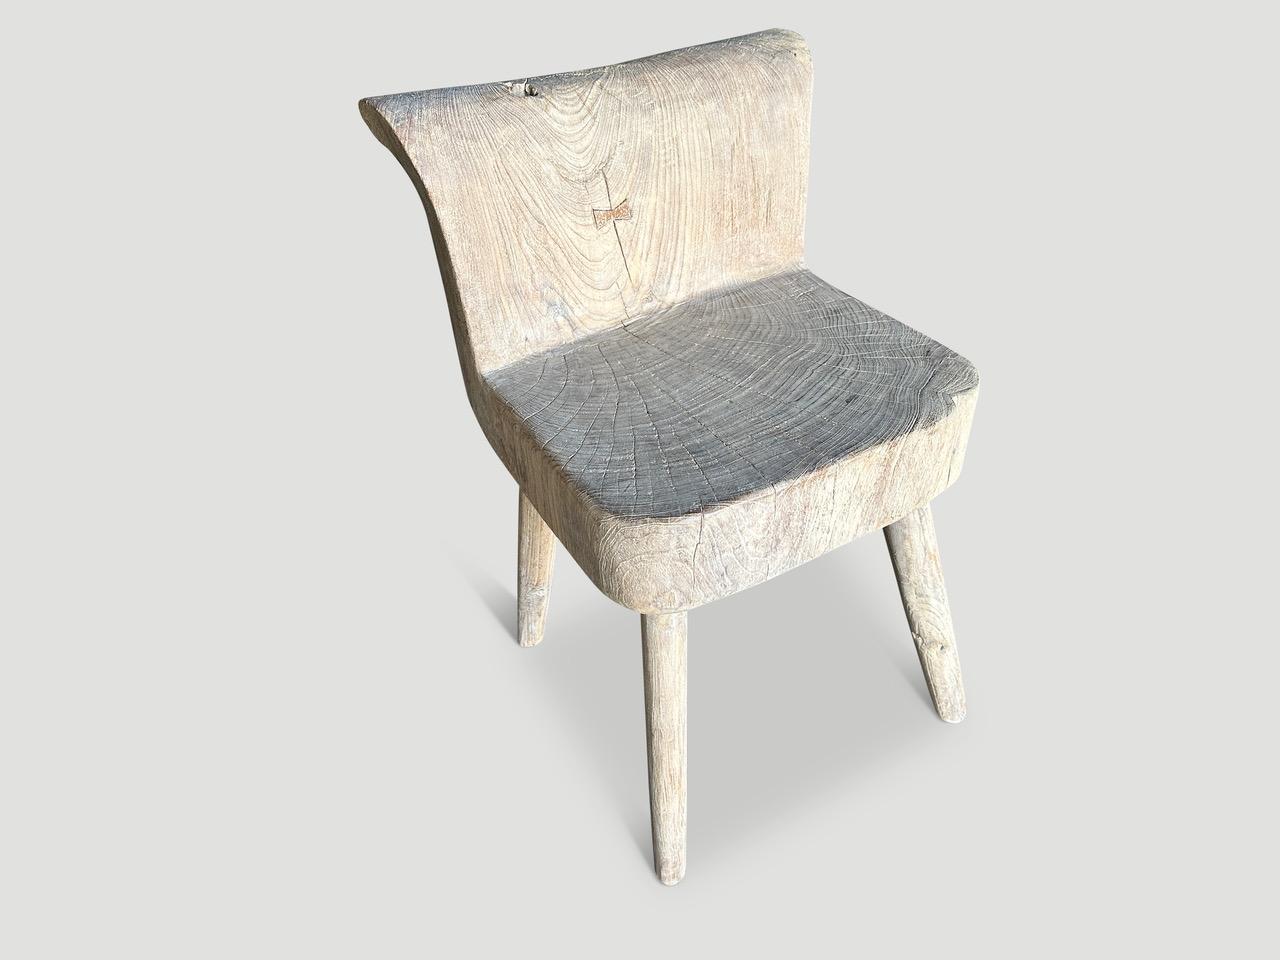 Schöner Stuhl, handgeschnitzt aus einem einzigen, wiederverwendeten Teakholzblock. Sowohl nutzbar als auch skulptural. Er kann auch als Beistelltisch verwendet werden. Sitz und Rückenlehne sind aus einem Stück Holz, dazu kommen vier minimalistische